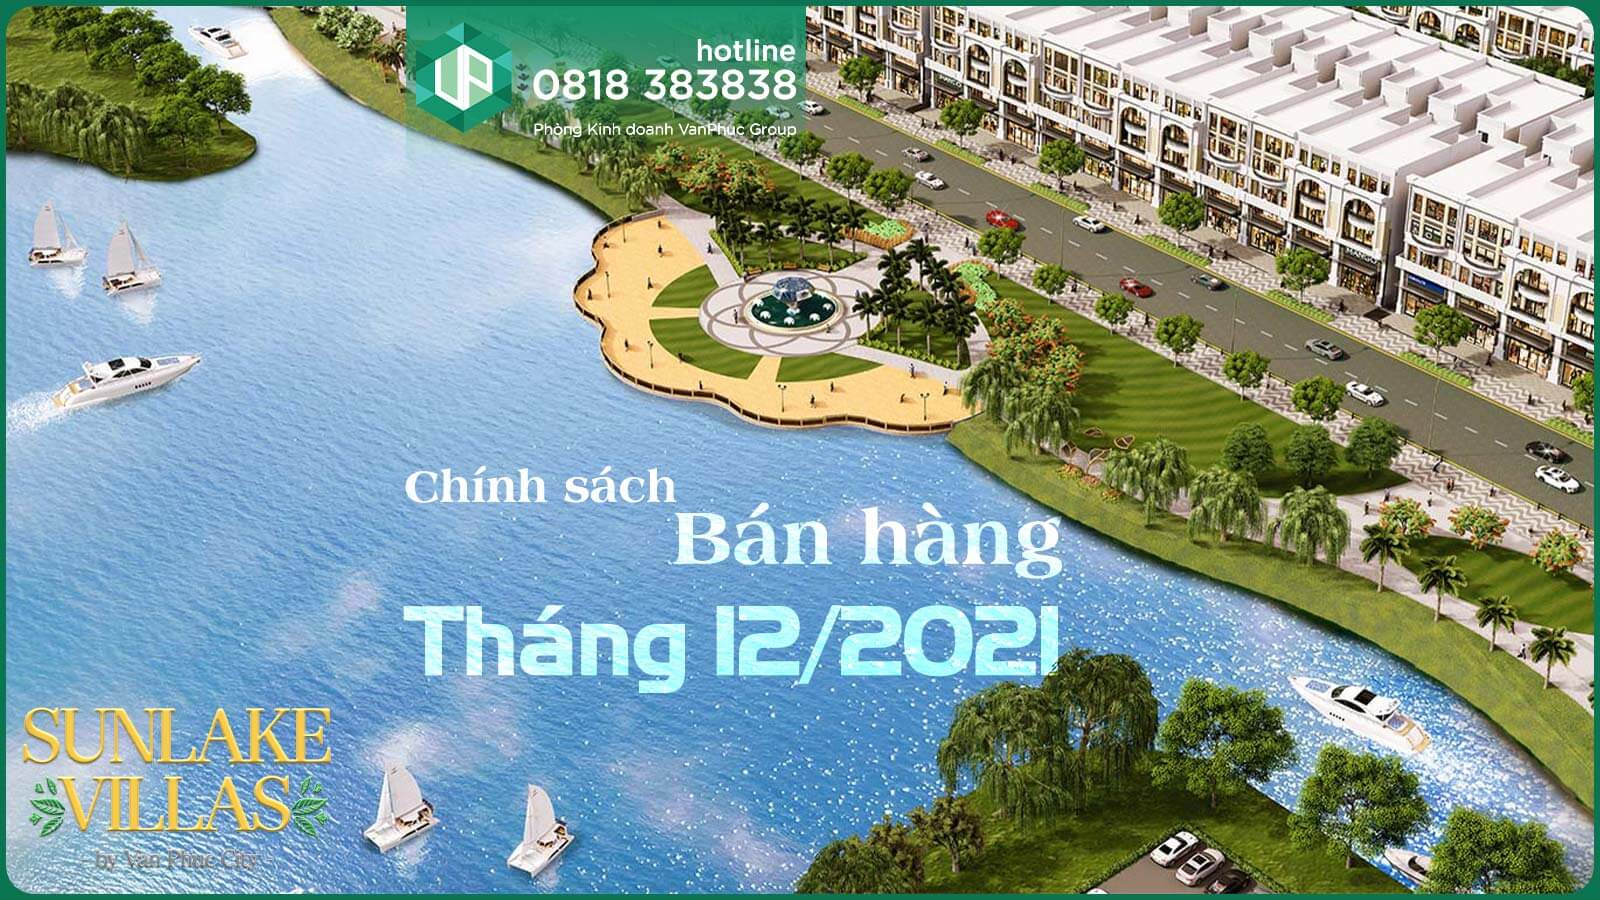 Chính sách bán hàng Van Phuc City áp dụng biệt thự phố SunLake Villas tháng 12/2021